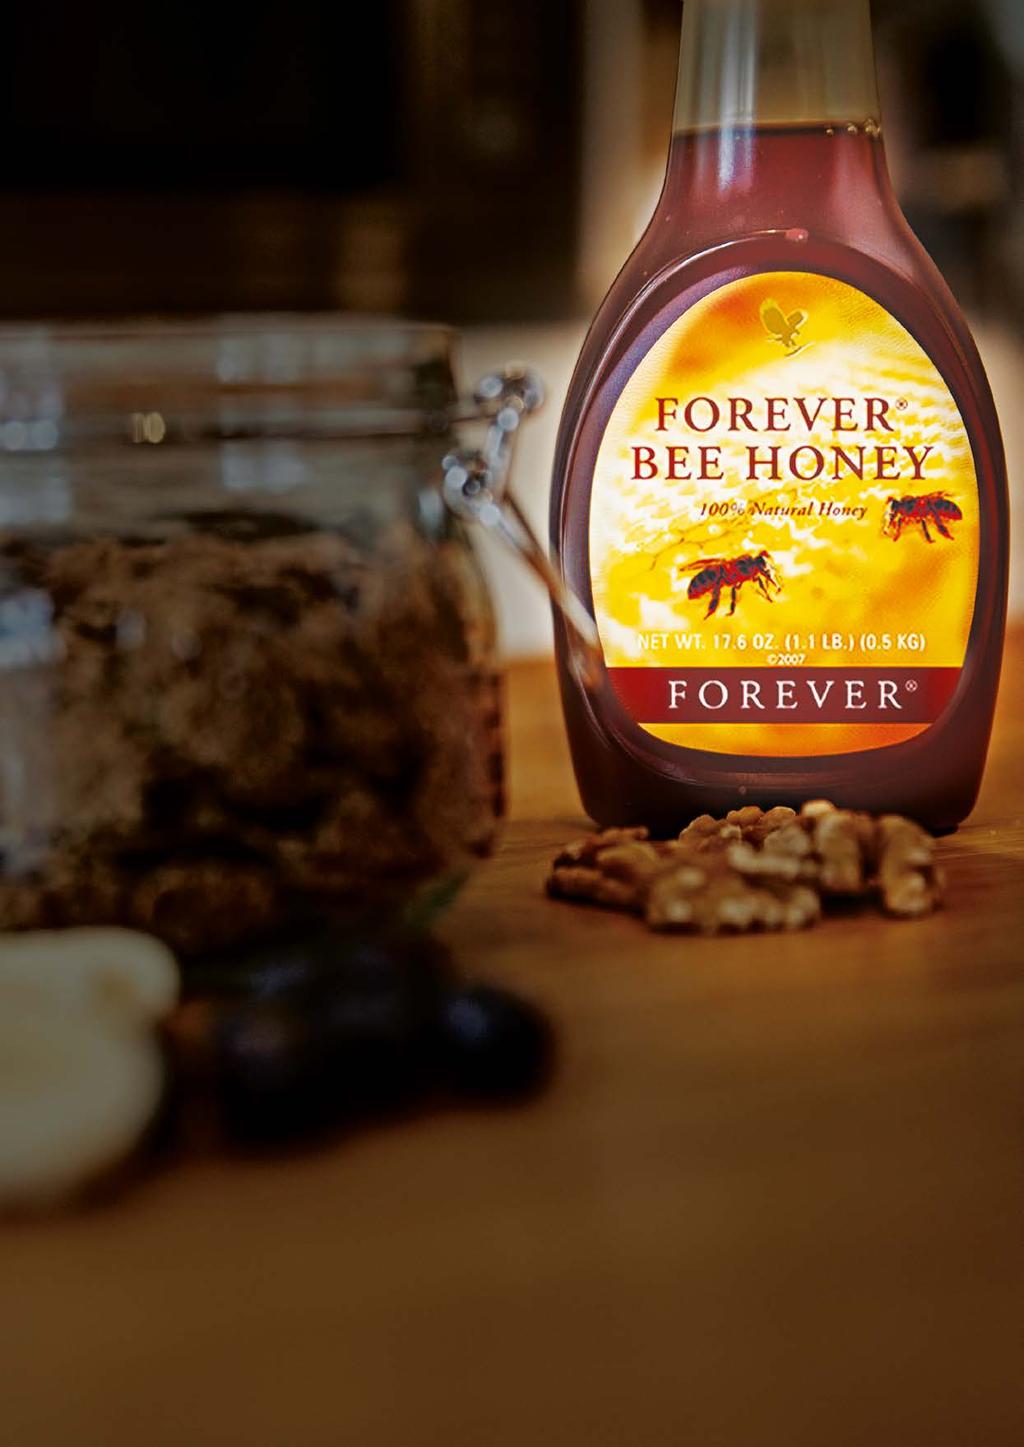 Bee Products puur goud Bezige honingbijen vormen een ware gouden schat van de natuur.